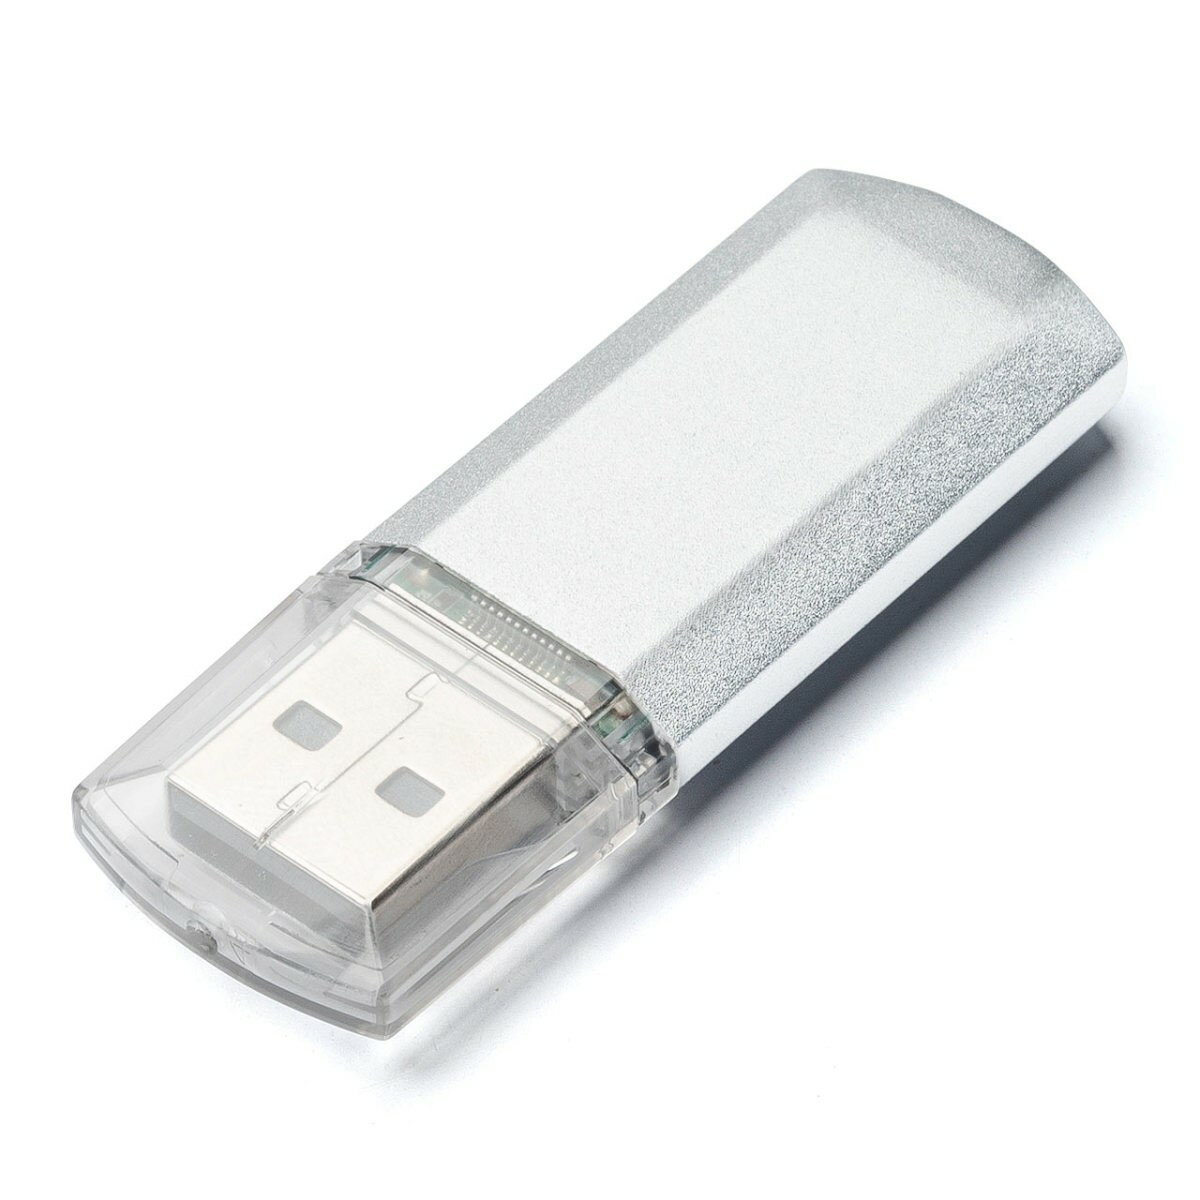 USBメモリ 8GB キャップ式 USBメモリー 入学 卒業